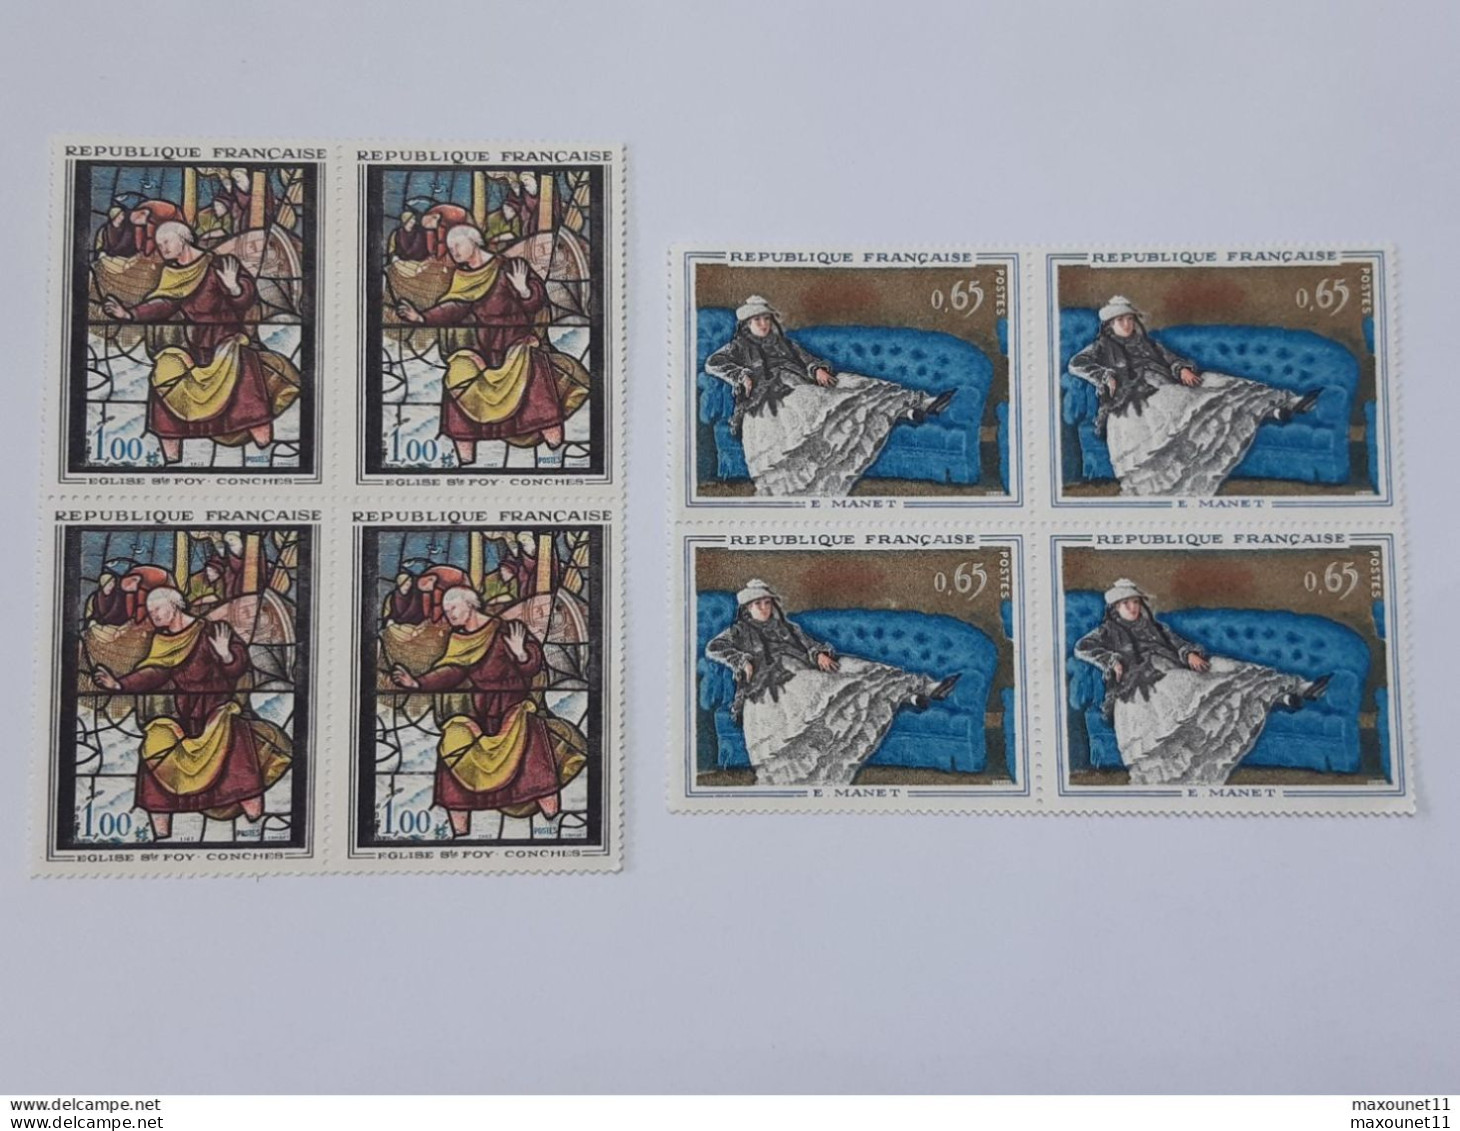 Lot de timbres 76 Polychromes de France neufs avec gomme sans charnières  .. Lot140 .